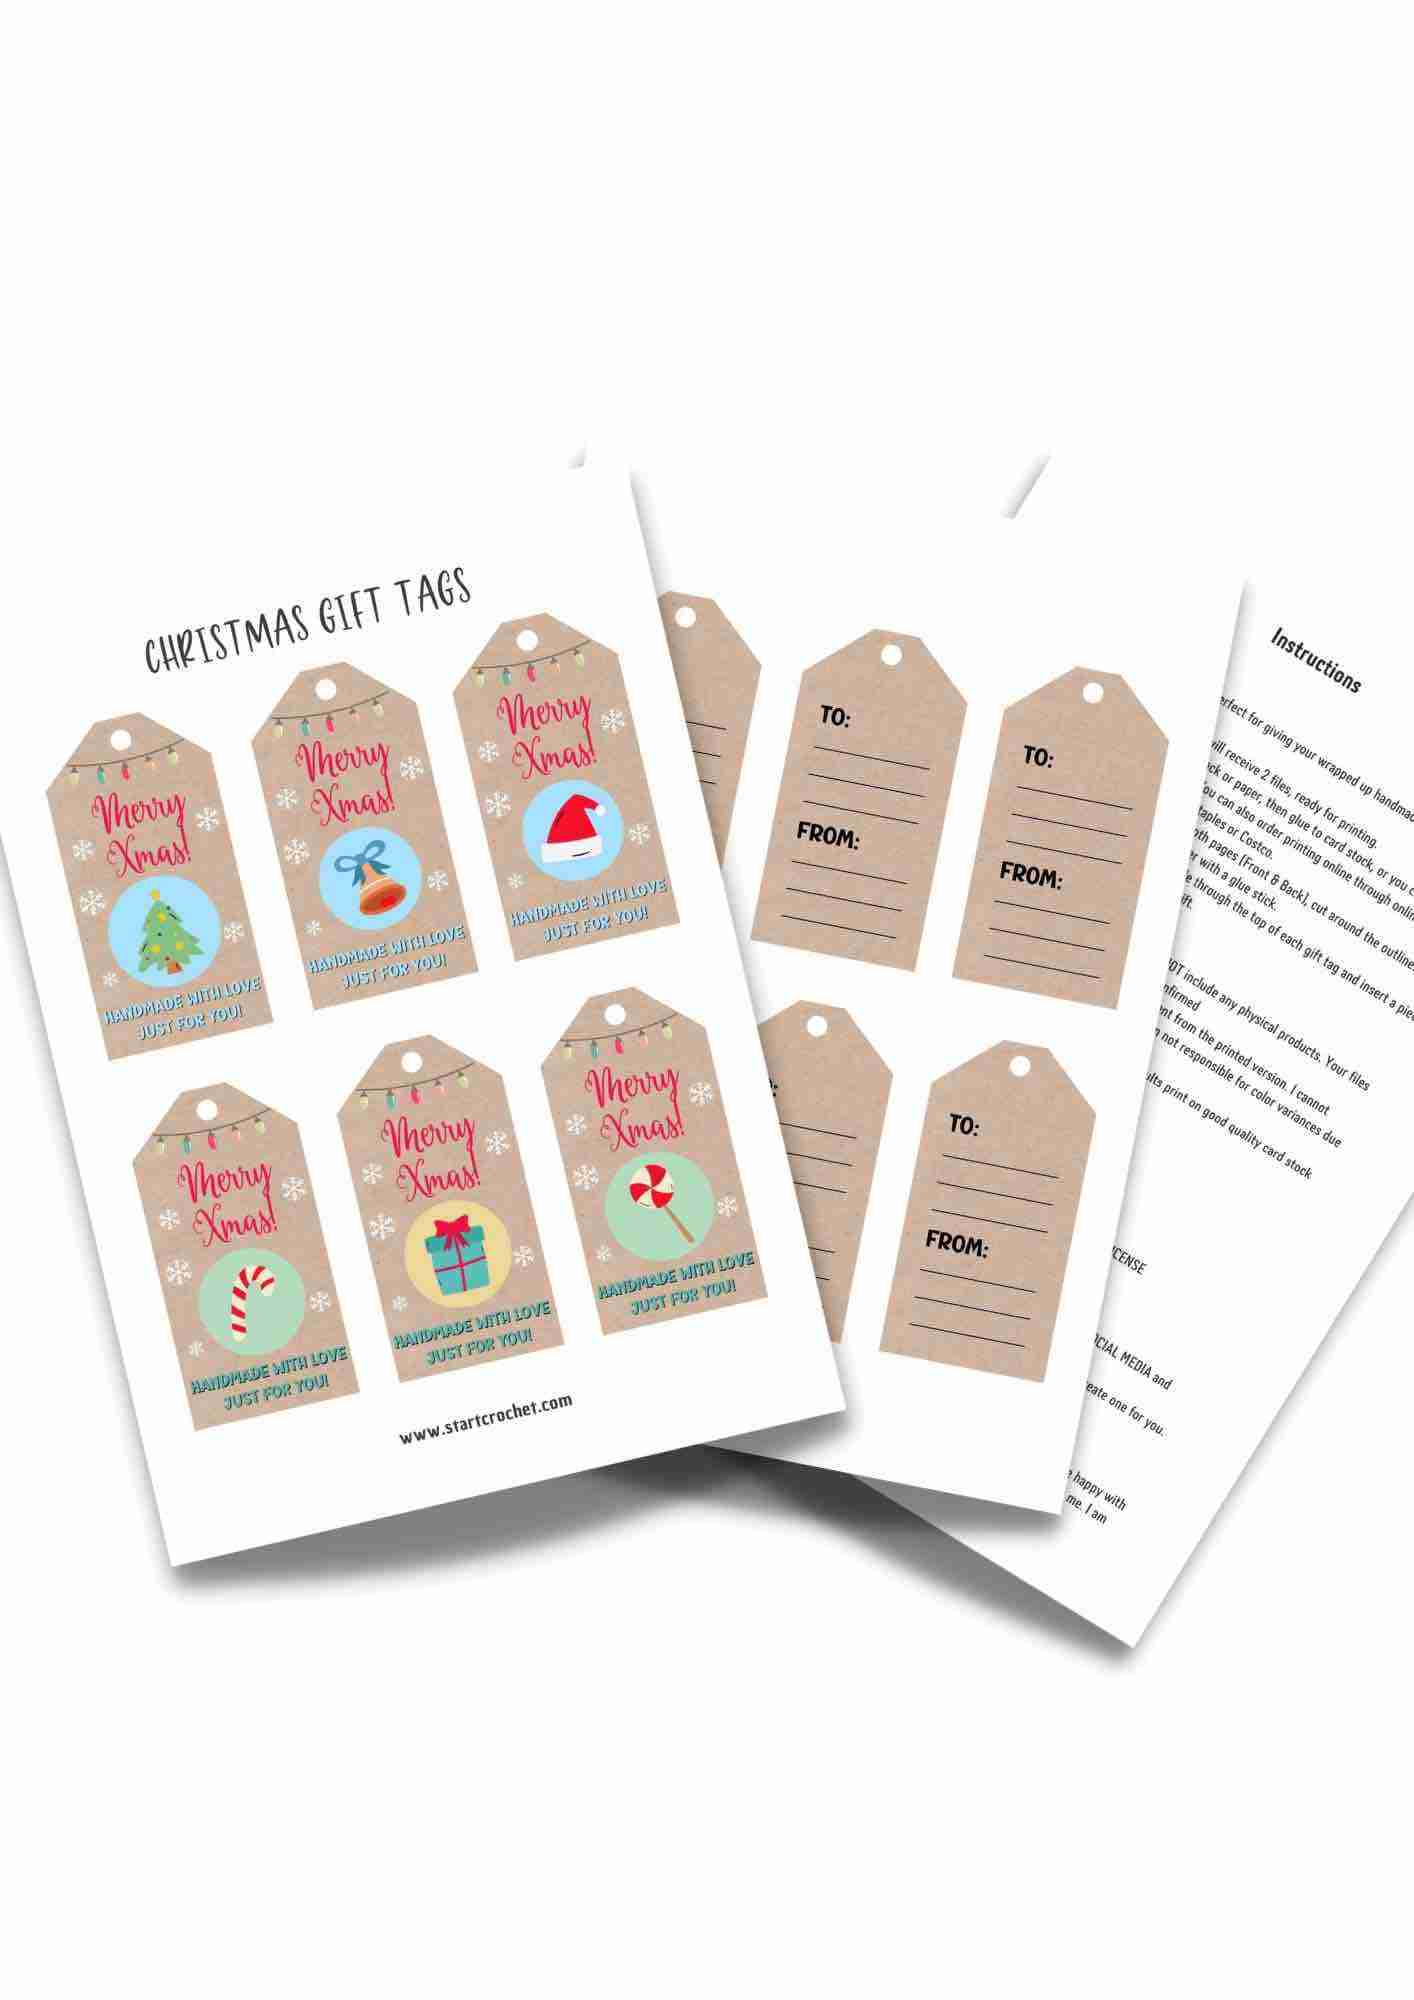 Handmade-With-Love-Christmas-Gift-Tags-PDF-Printable